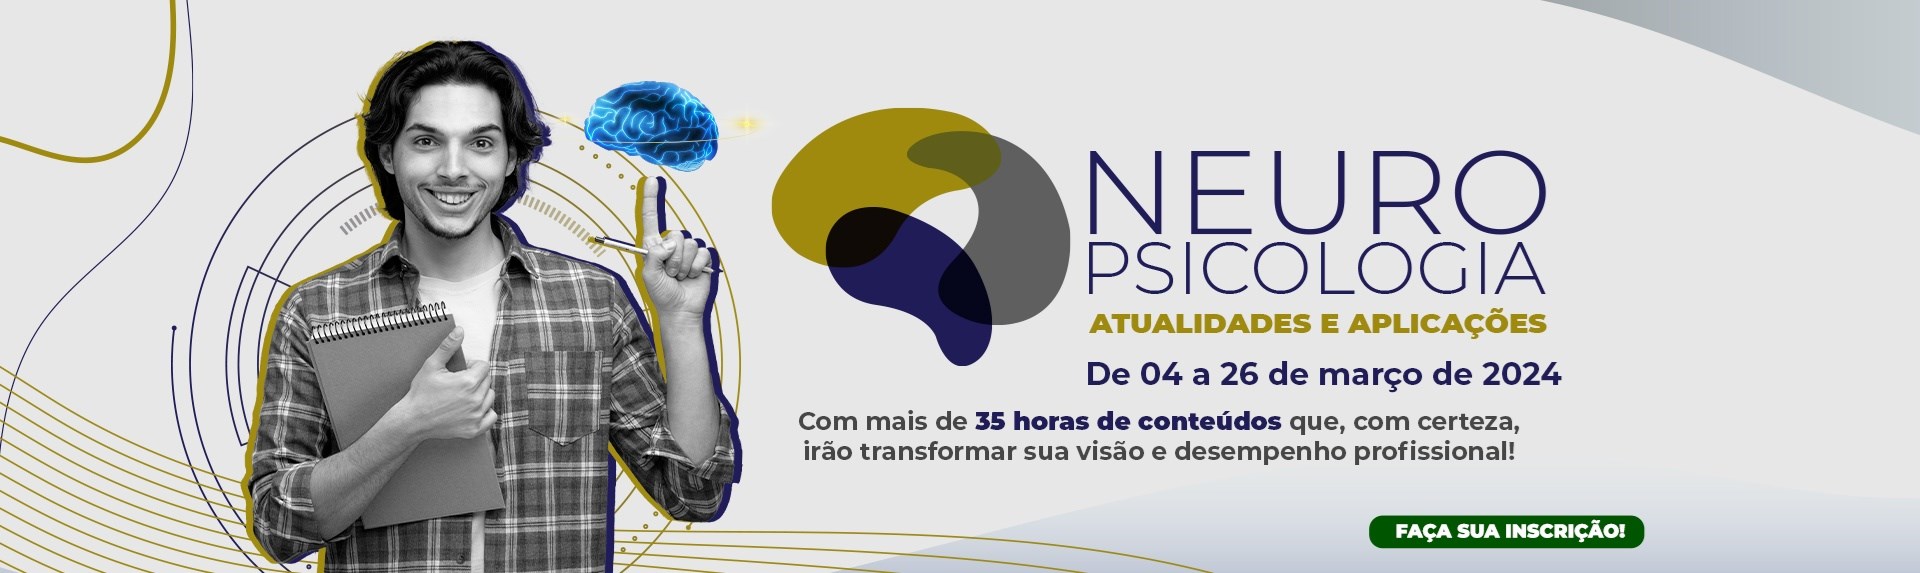 Neuropsicologia - Atualidades e Aplicações